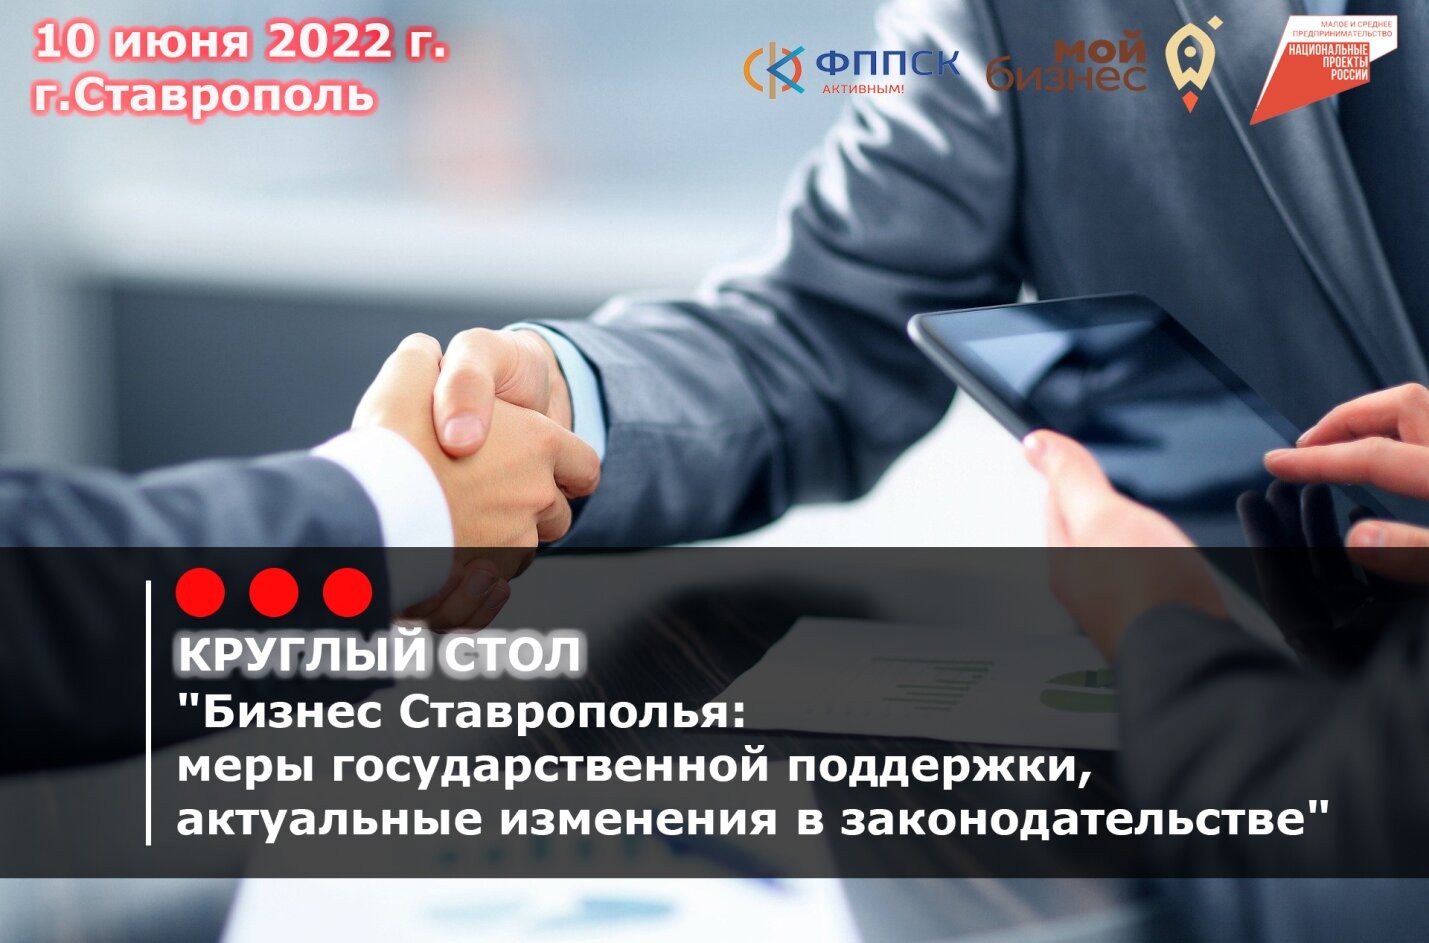 Круглый стол: Бизнес Ставрополья: меры государственной поддержки, актуальные изменения в законодательстве